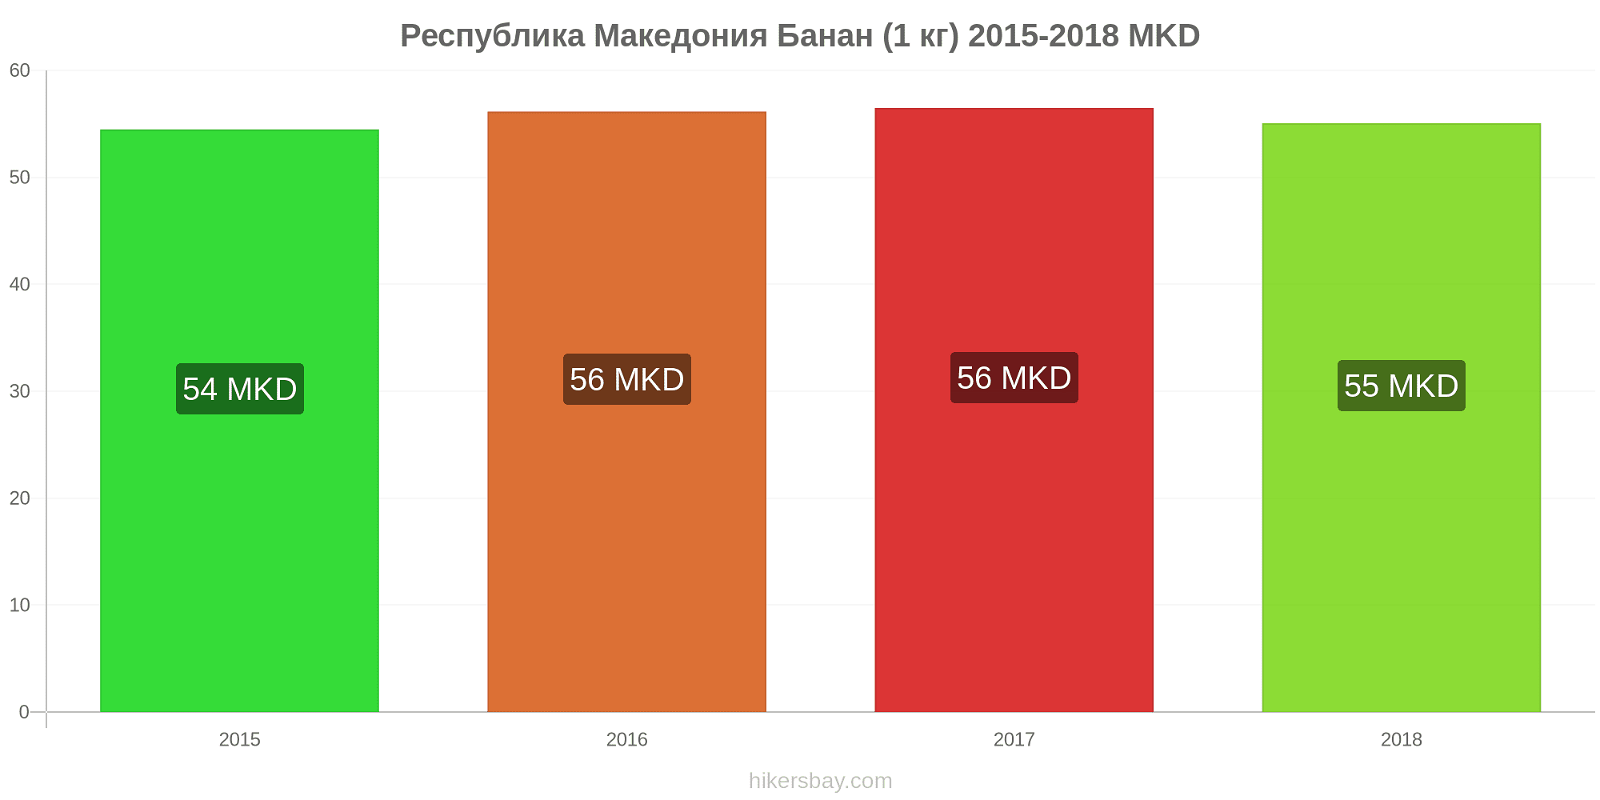 Республика Македония изменения цен Бананы (1 кг) hikersbay.com